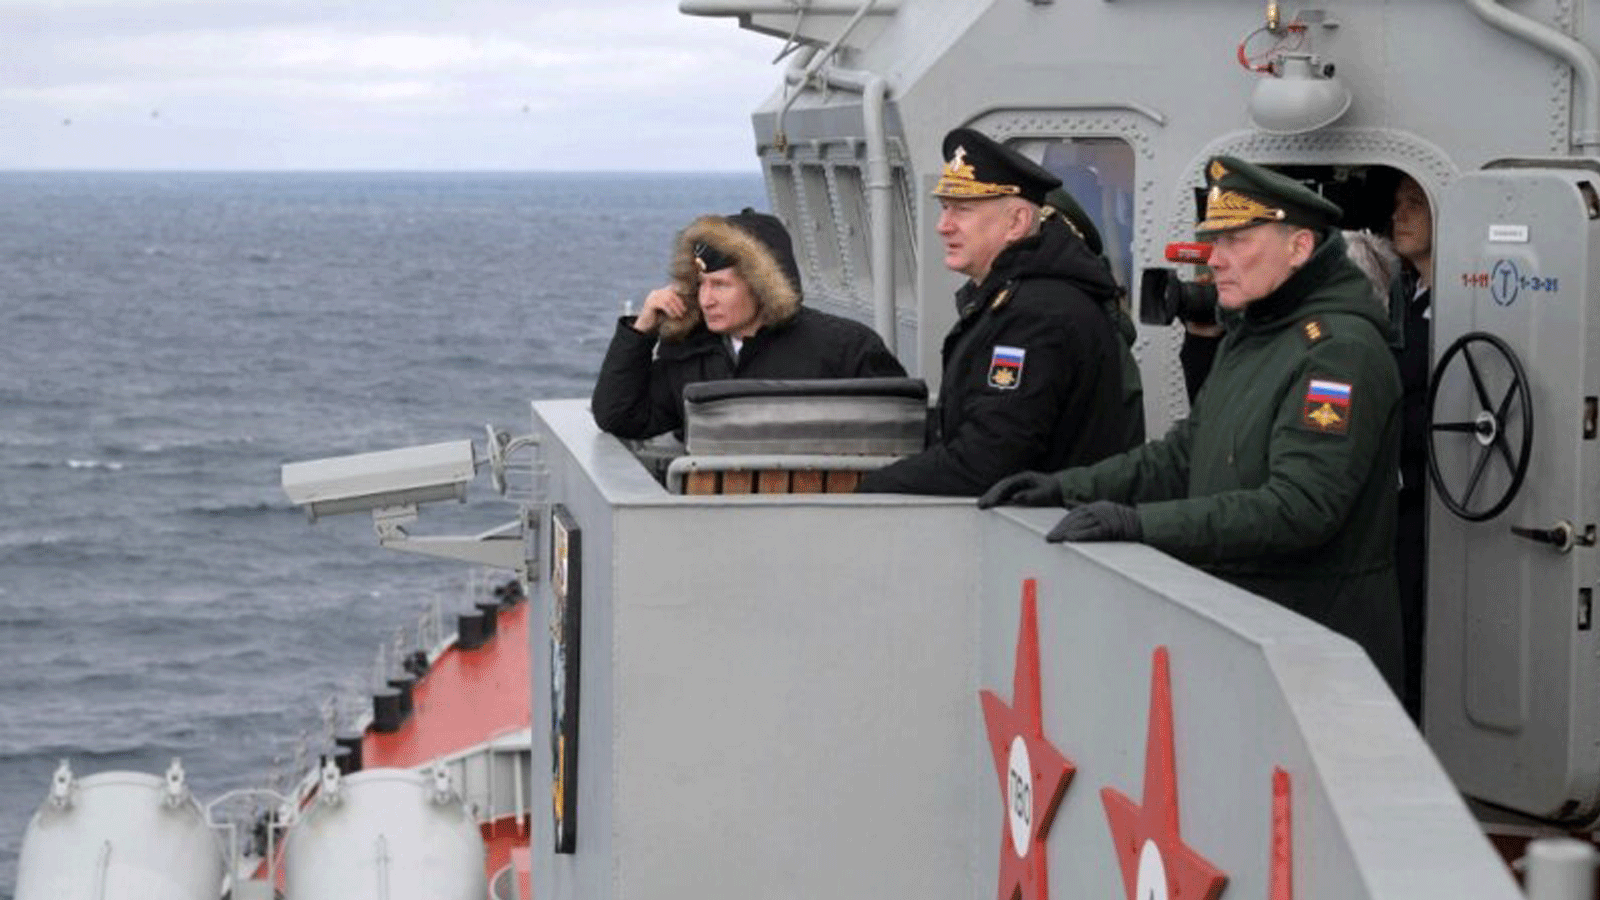 الرئيس الروسي فلاديمير بوتين (يسار) يراقب التدريبات المشتركة لأسطولي البحر الشمالي والأسود من على متن السفينة. مع المارشال أوستينوف قبالة سواحل شبه جزيرة القرم، 9 كانون الثاني /يناير 2020